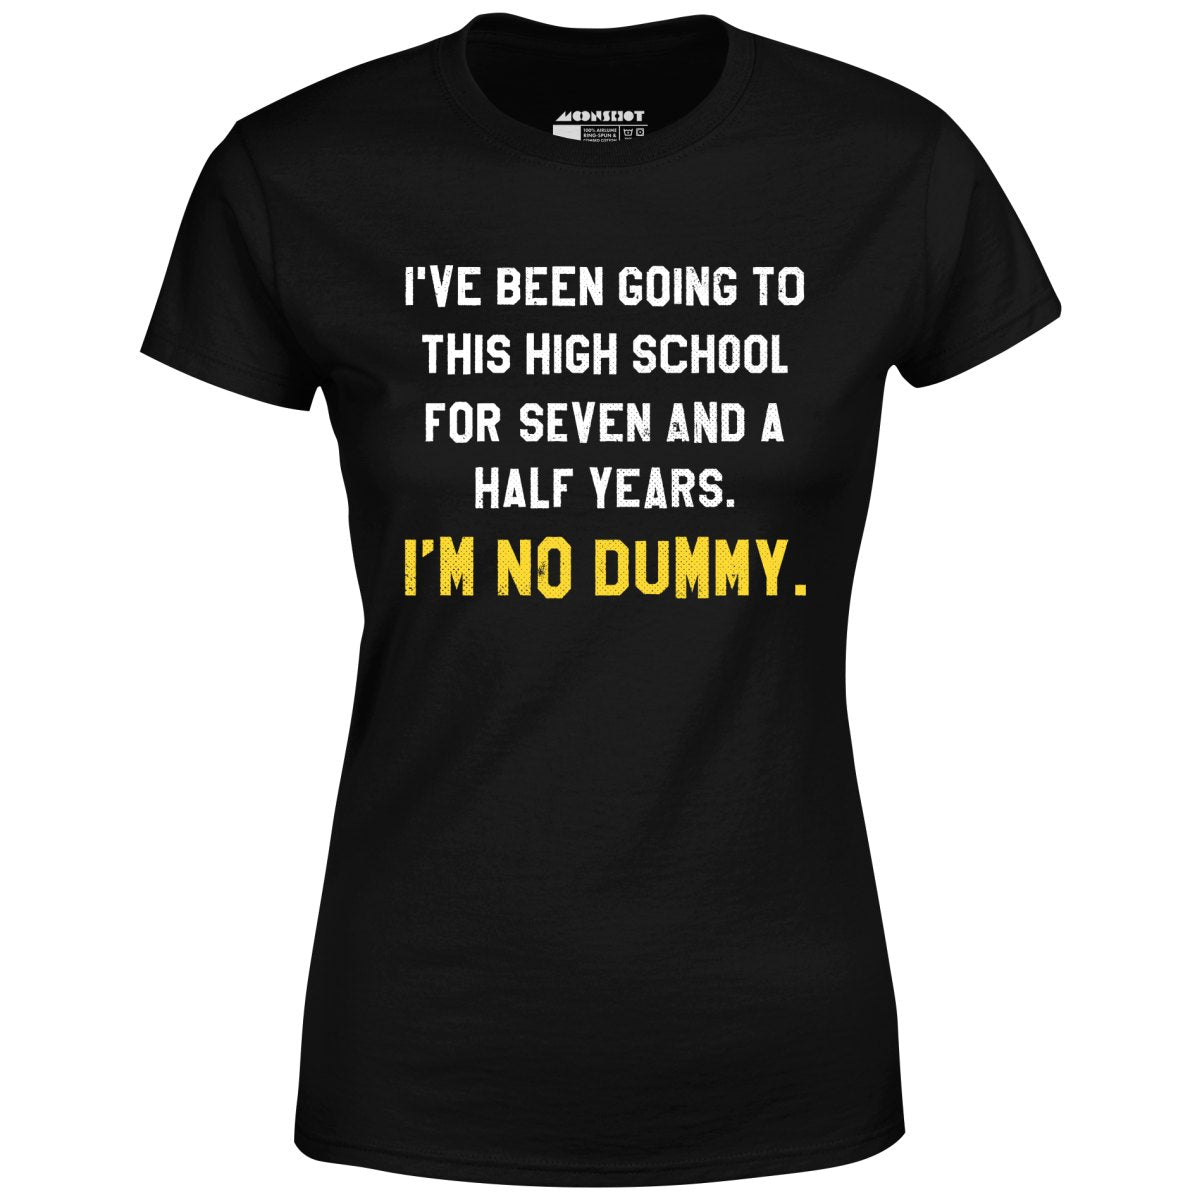 I'm No Dummy - Women's T-Shirt